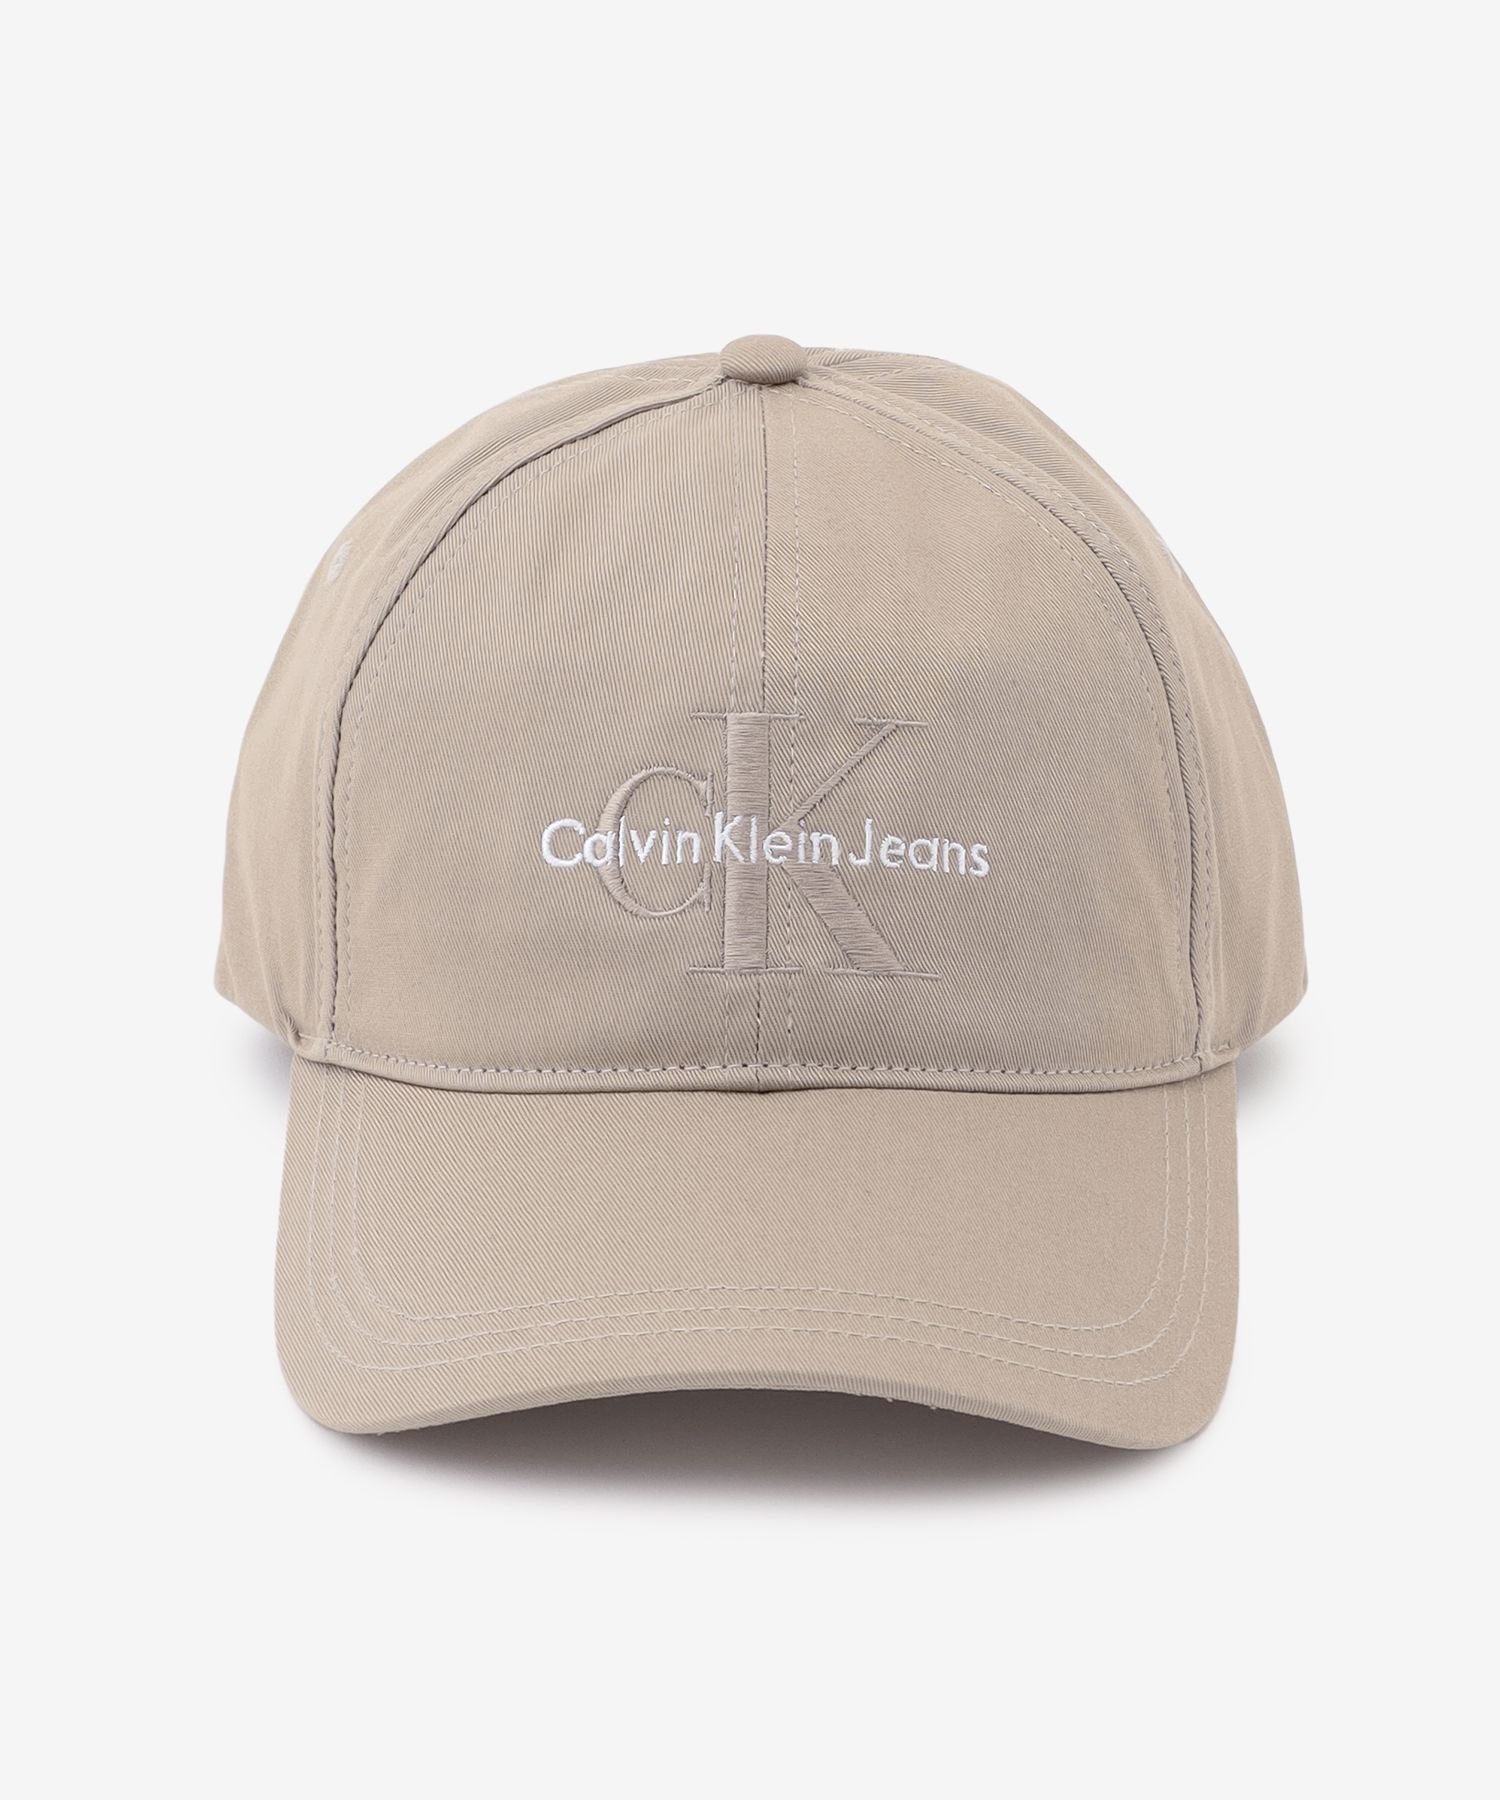 Calvin Klein｜CALVIN KLEIN JEANS/(M)【公式ショップ】 カルバン